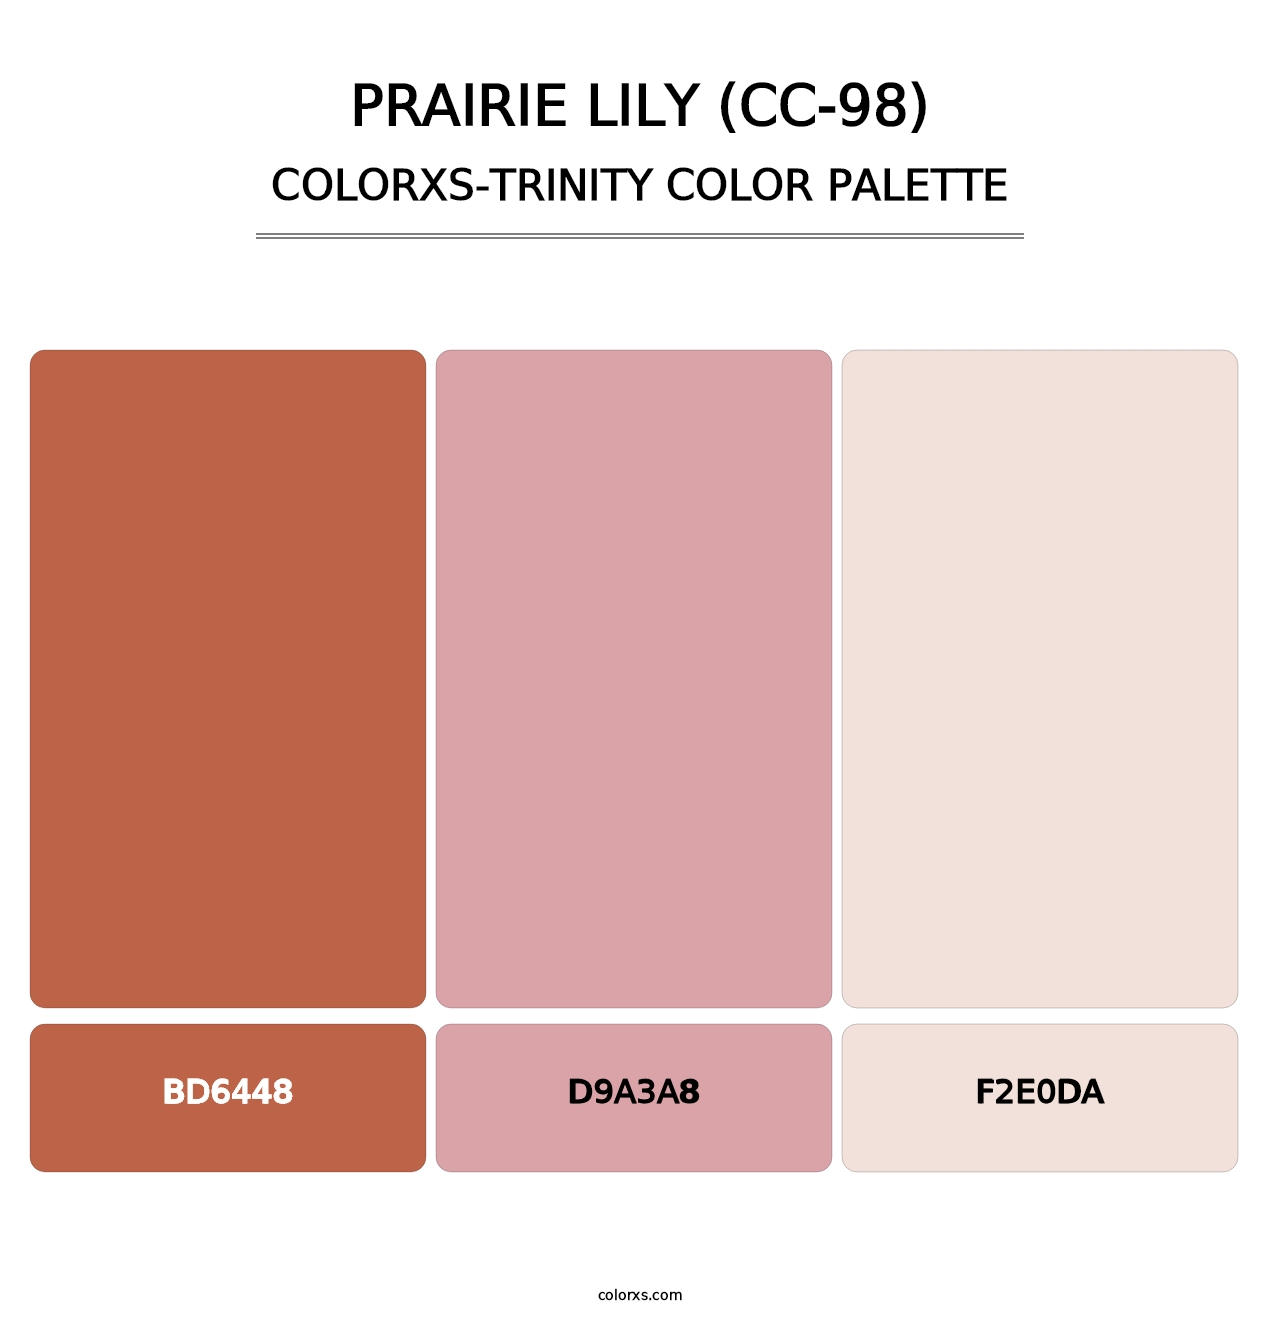 Prairie Lily (CC-98) - Colorxs Trinity Palette